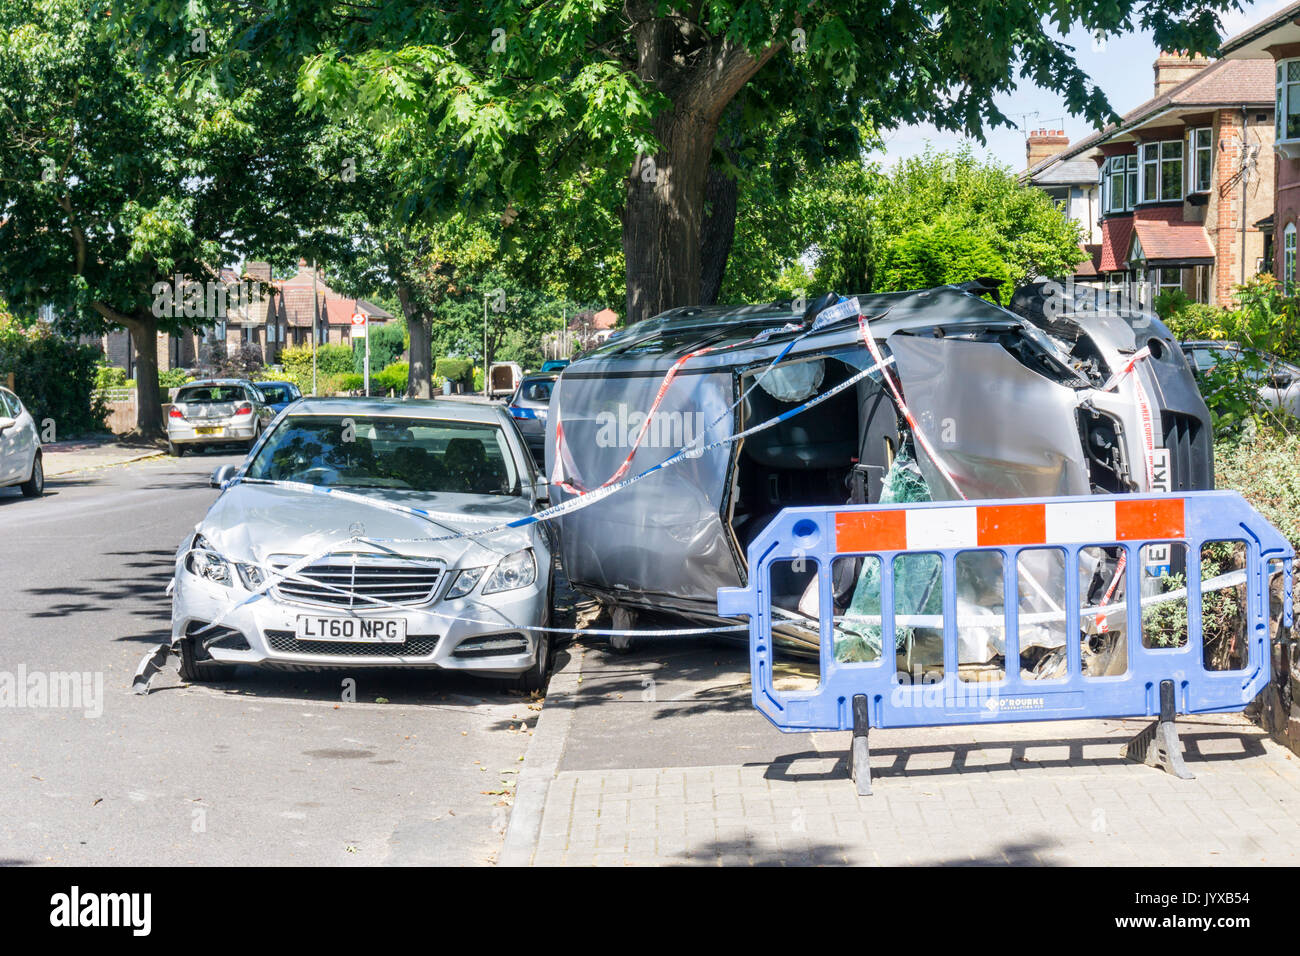 Ergebnis von Verkehrsunfall in suburban Wohnstraße. Silber Nissan Qashqai Visia Auto umgeworfen auf Seite auf Pflaster & mit Polizei Klebeband bedeckt. Stockfoto